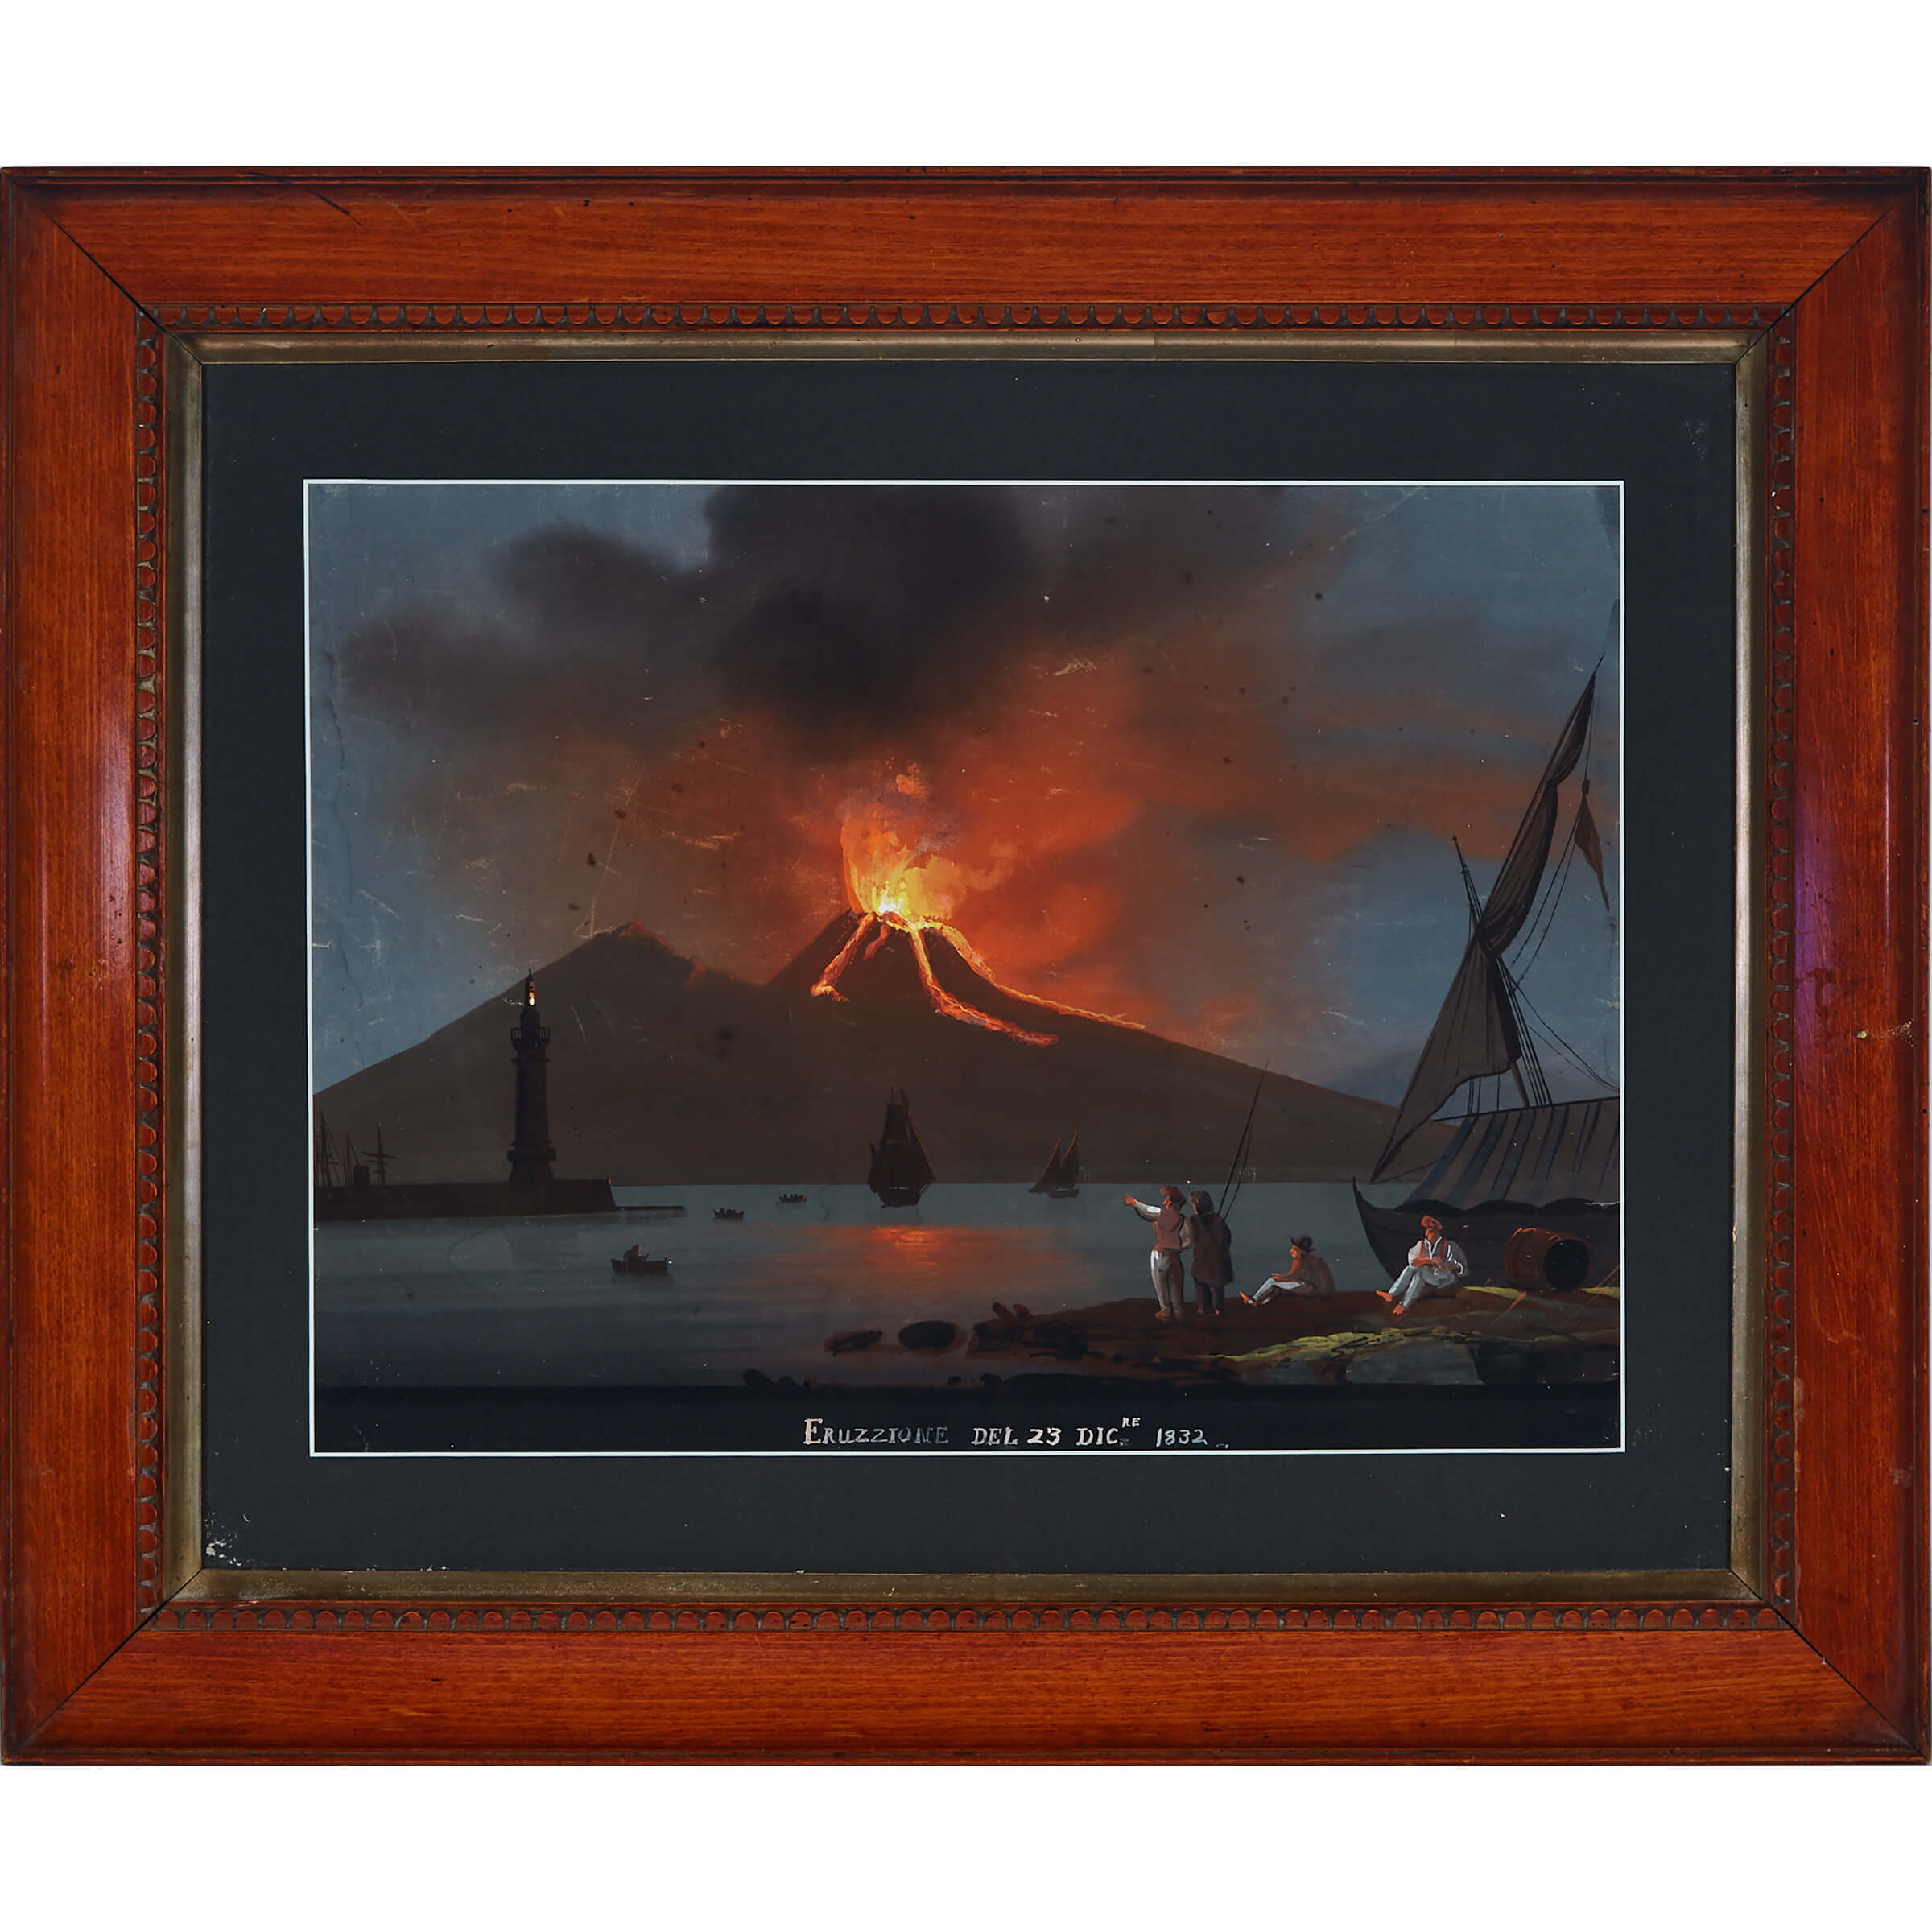 Neapolitan School Night View of an Eruption of Vesuvius, c.1832